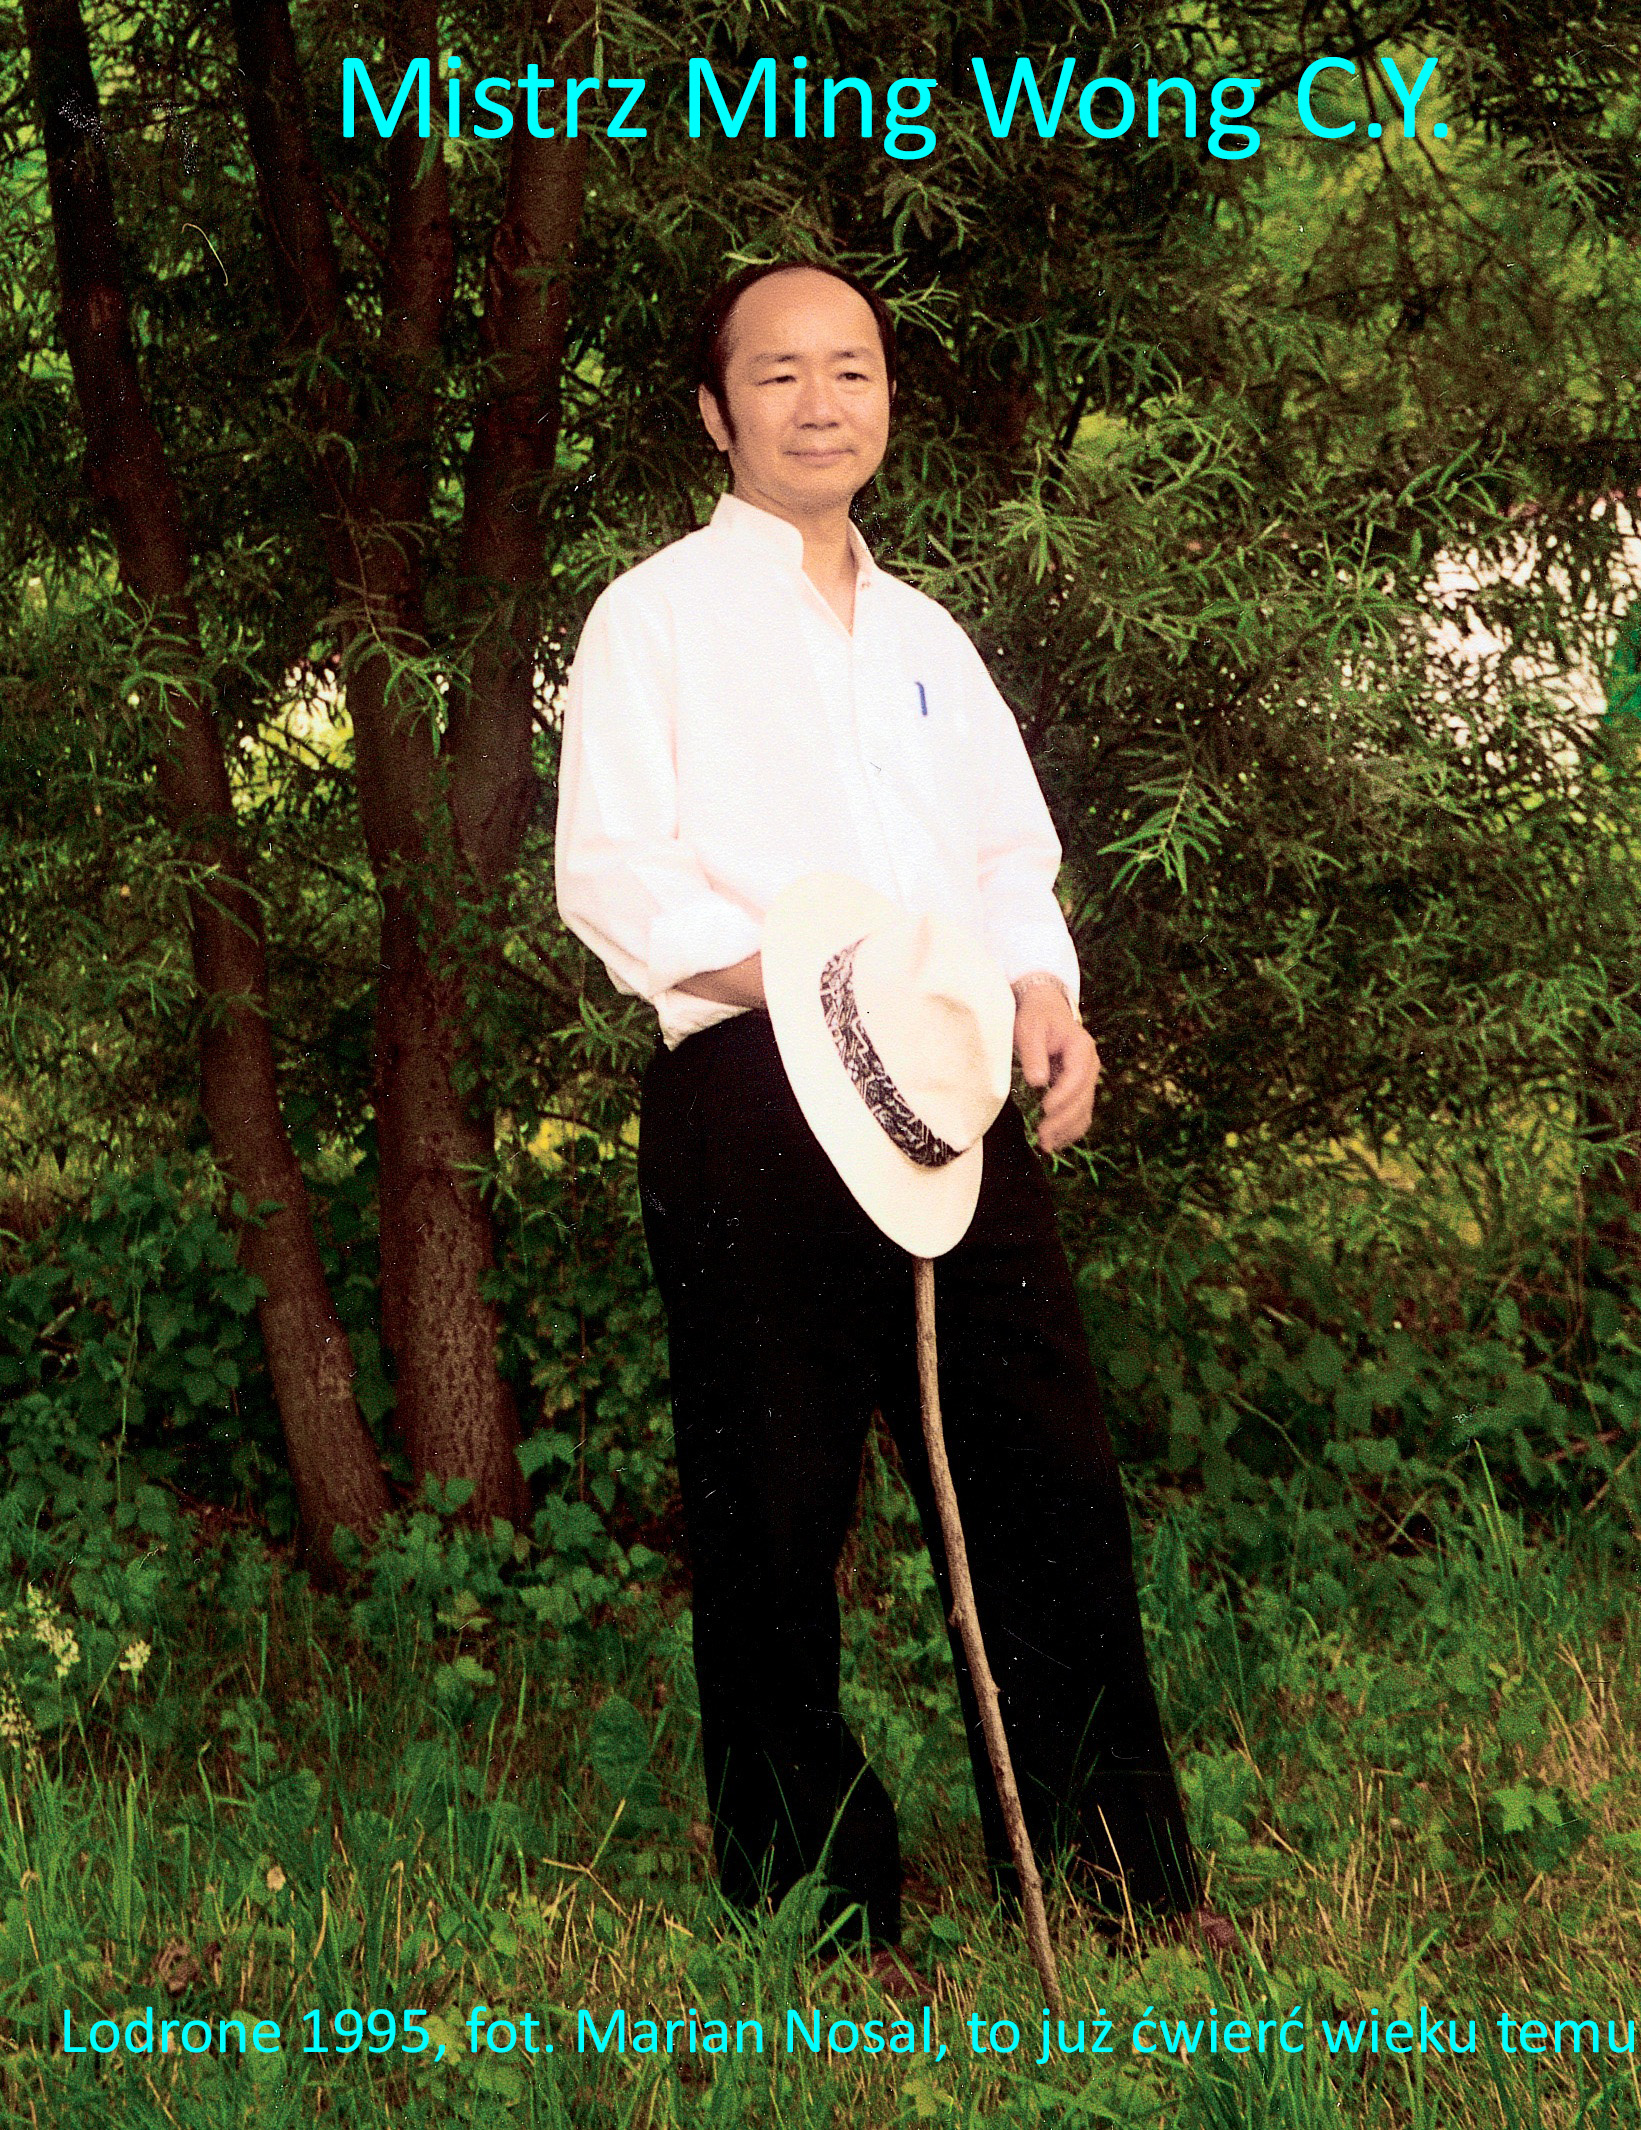 Kurs masażu stóp On Zon Su, Szkolenia refleksologii stóp - mistrz Ming Wong C. Y. MW_las_napisy_1.jpg